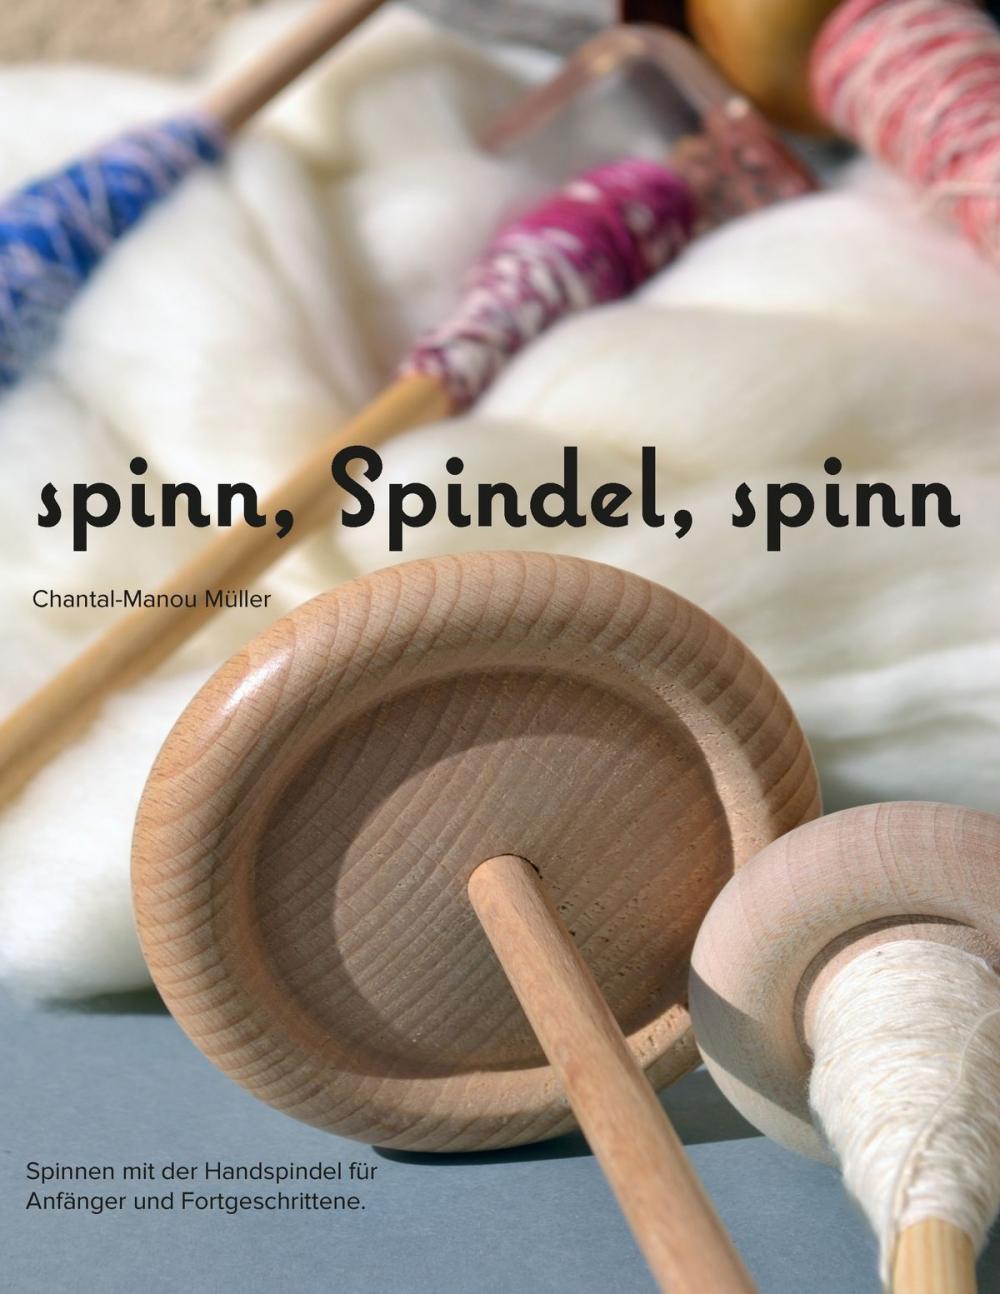 Big bigCover of spinn, Spindel, spinn